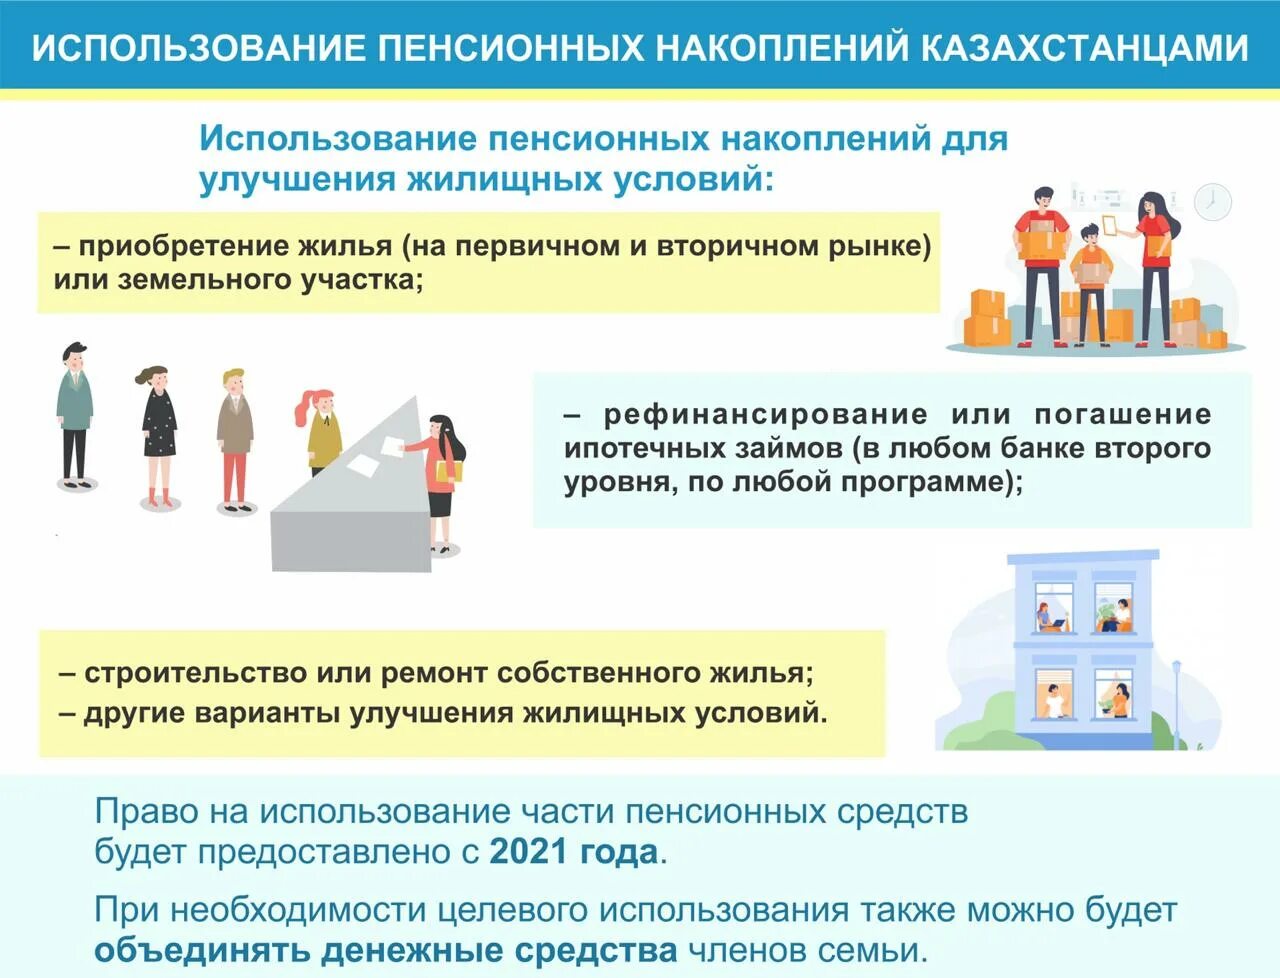 Открыть счет в казахстане гражданину. Улучшение жилищных условий. Как можно использовать накопительную пенсию. Порог минимальной достаточности пенсионных накоплений. Формирование пенсионных накоплений.